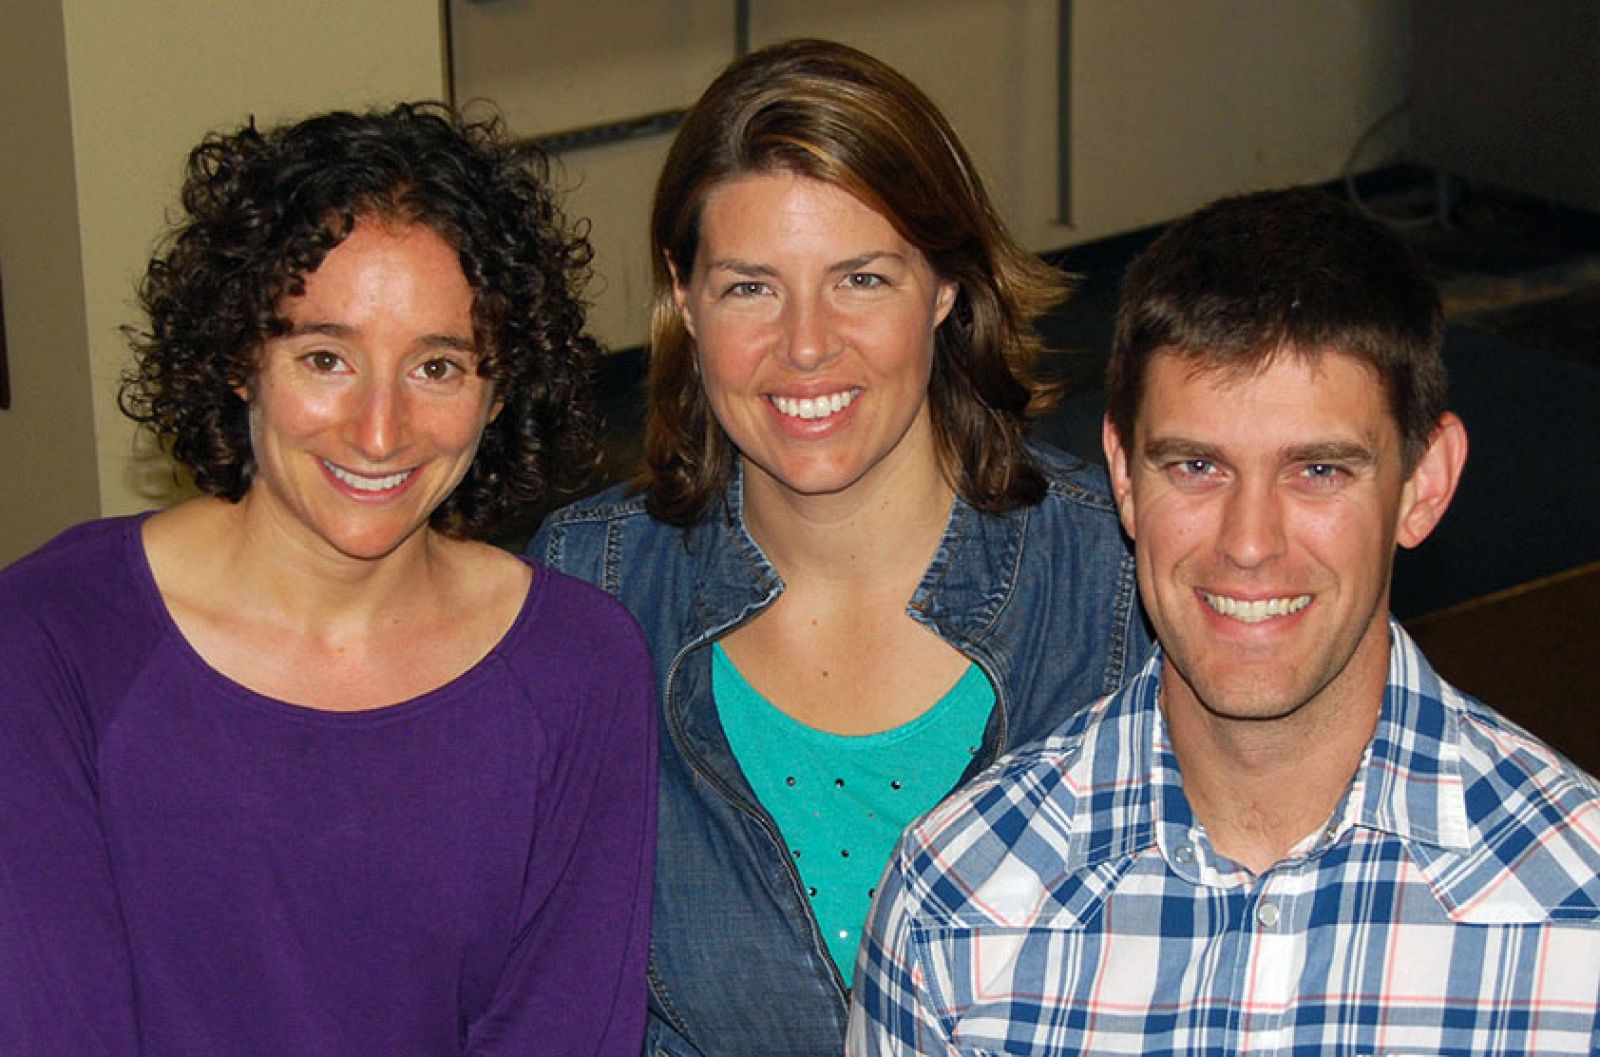 El el centro, la investigadora del Instituto de Investigación Scripps, Erica Ollmann Saphire, acompañada de otros dos científicos de su laboratorio.